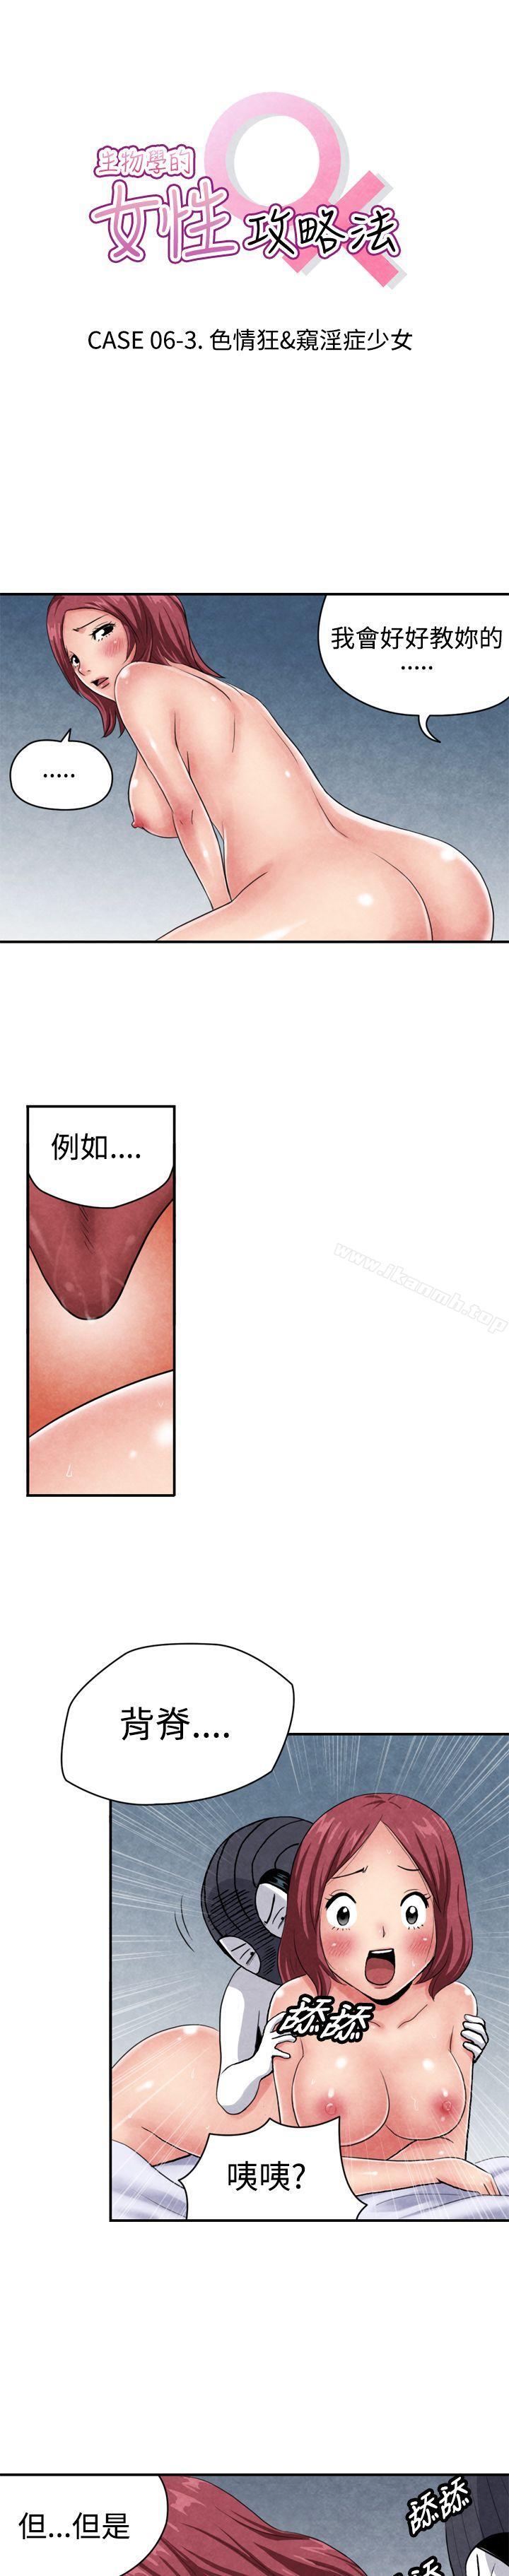 《生物學的女性攻略法》在线观看 CASE06-3.色情狂&窥淫症少女 漫画图片1